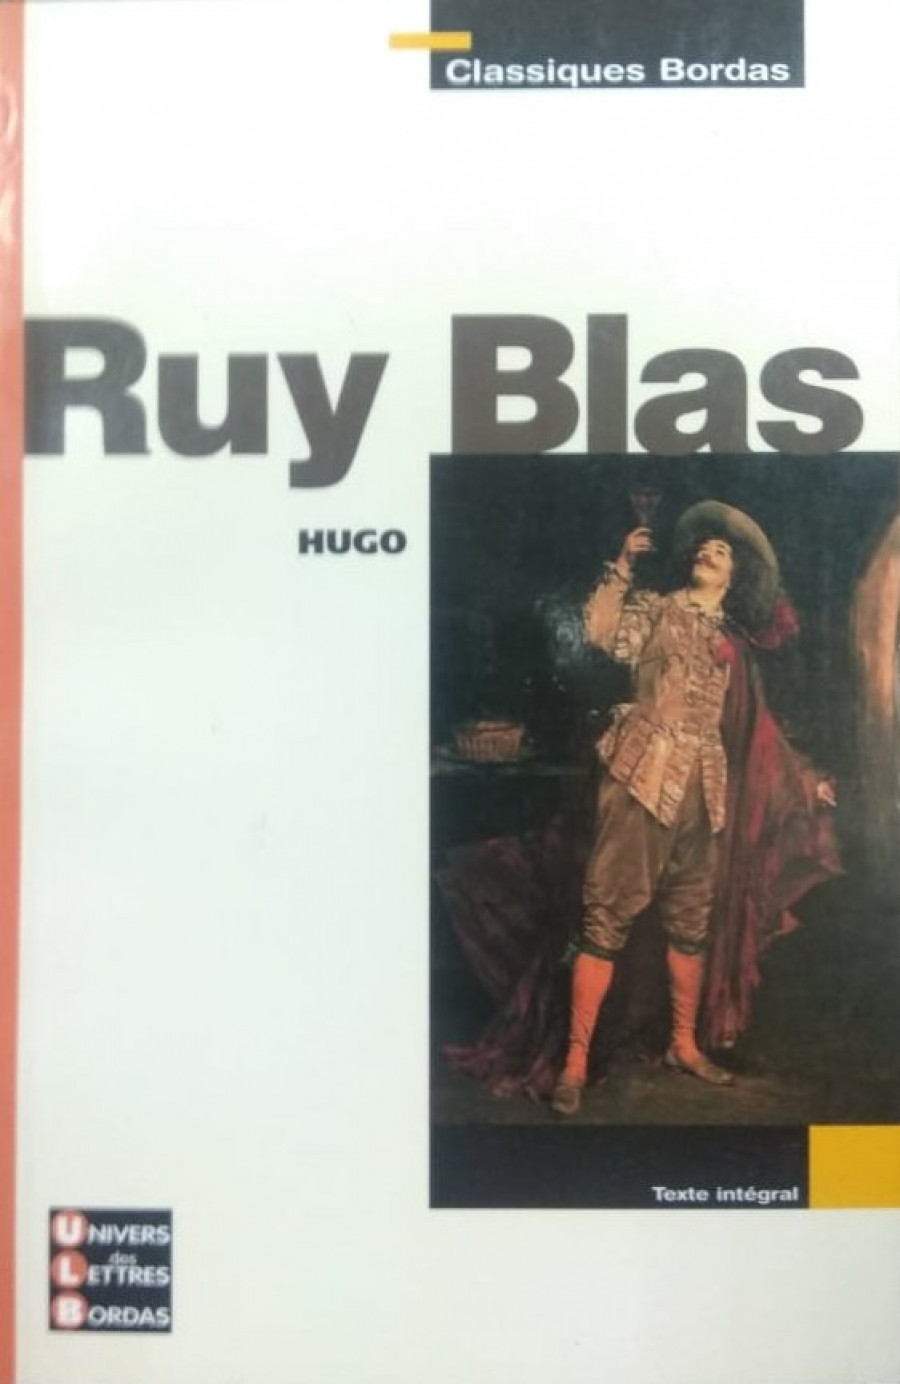 Bordas Hugo Ruy Blas 